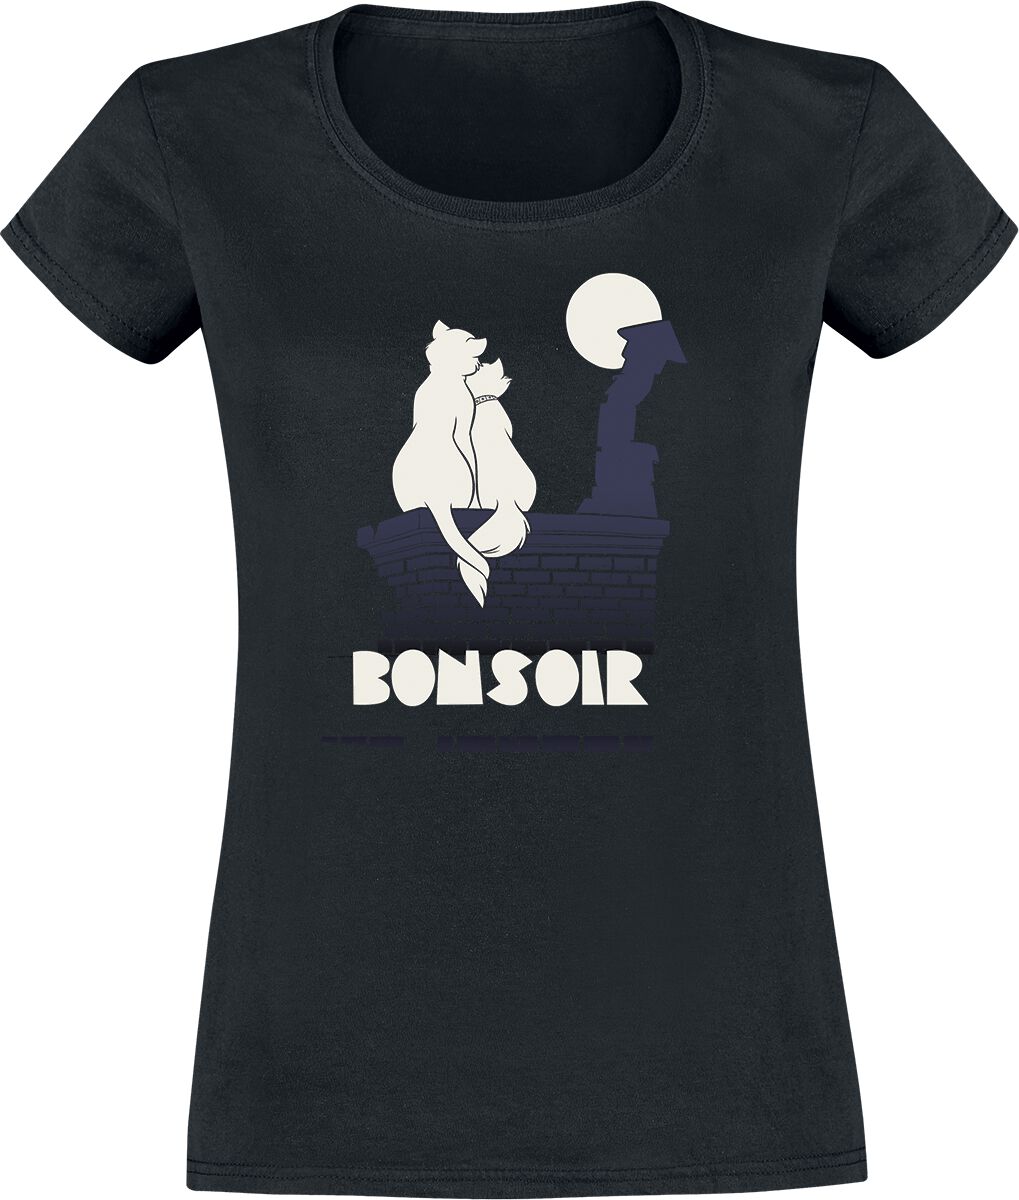 T-Shirt Manches courtes Disney de Les Aristochats - Bonsoir - S à XL - pour Femme - noir